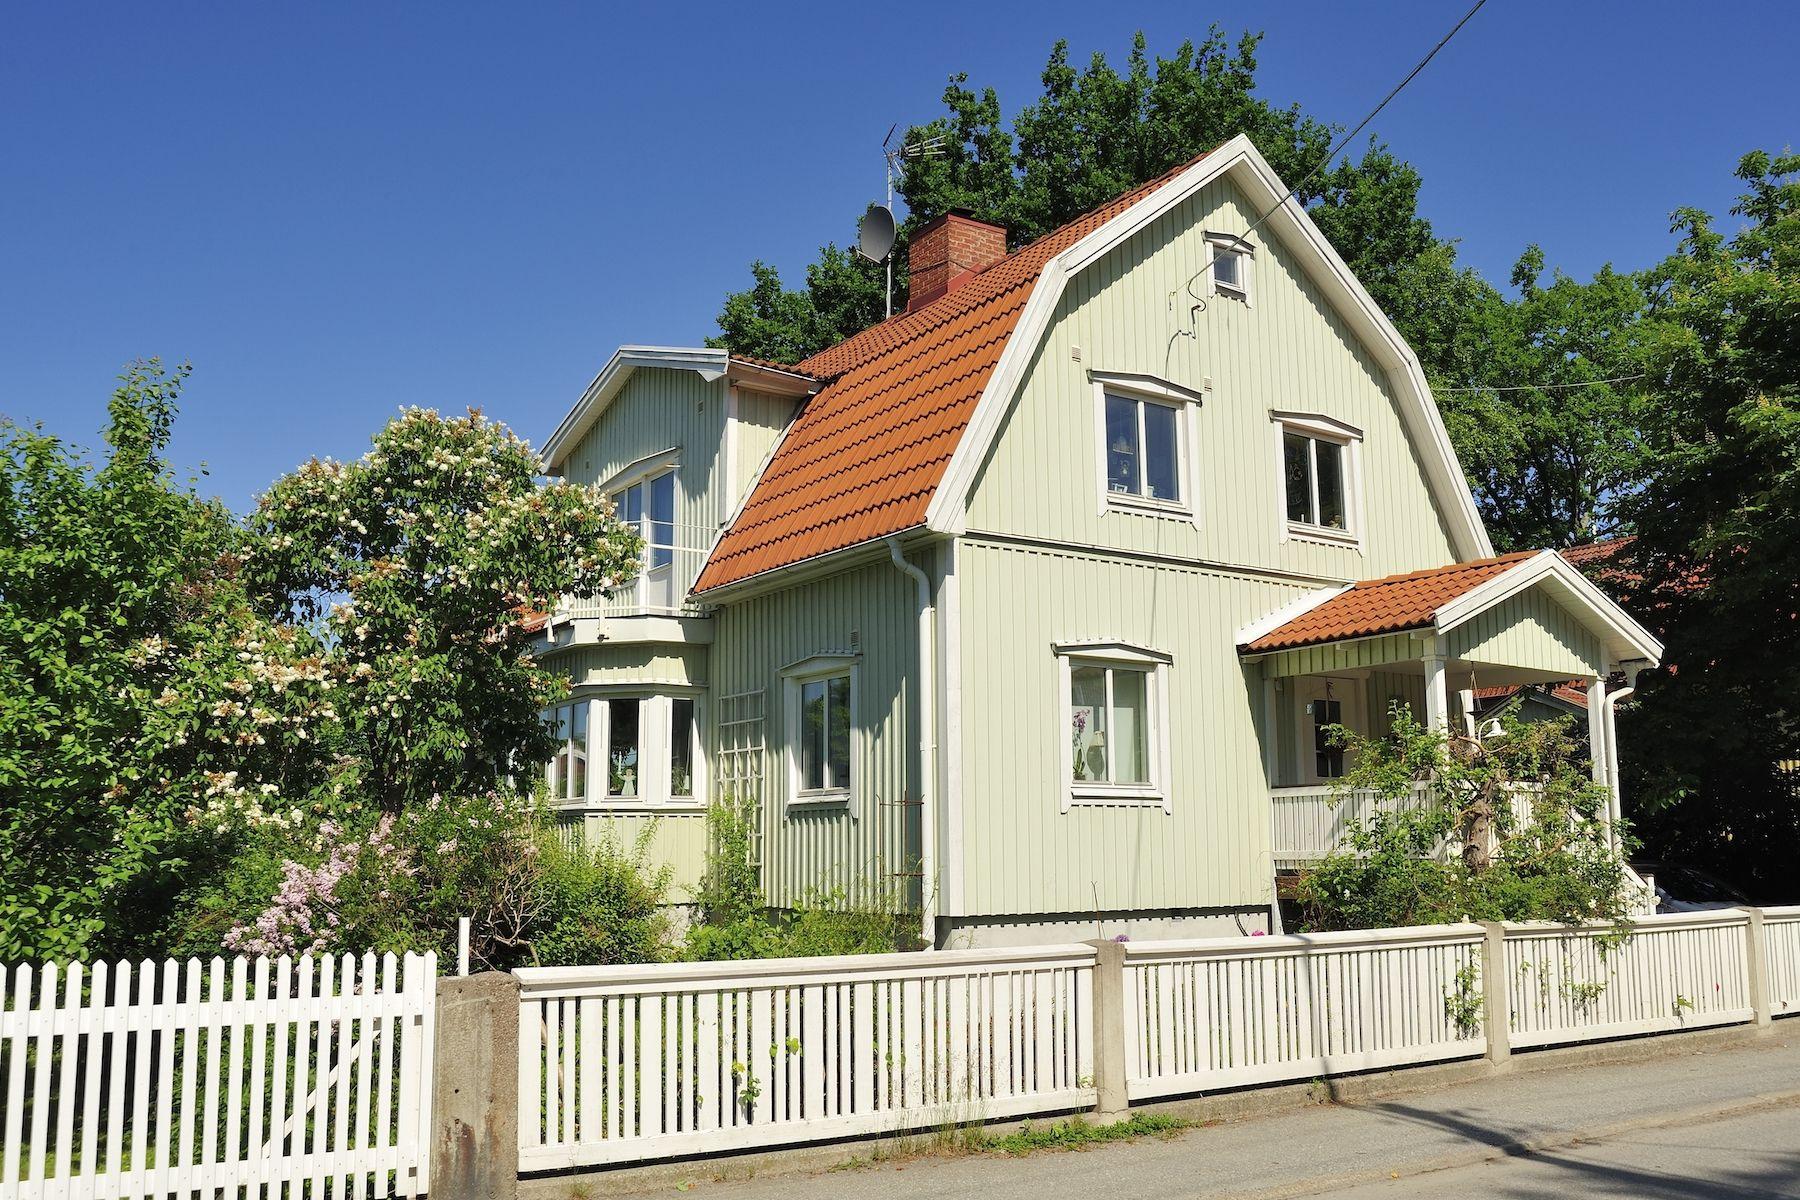 Hus med ljusgrön fasad och tegeltak, vitt staket